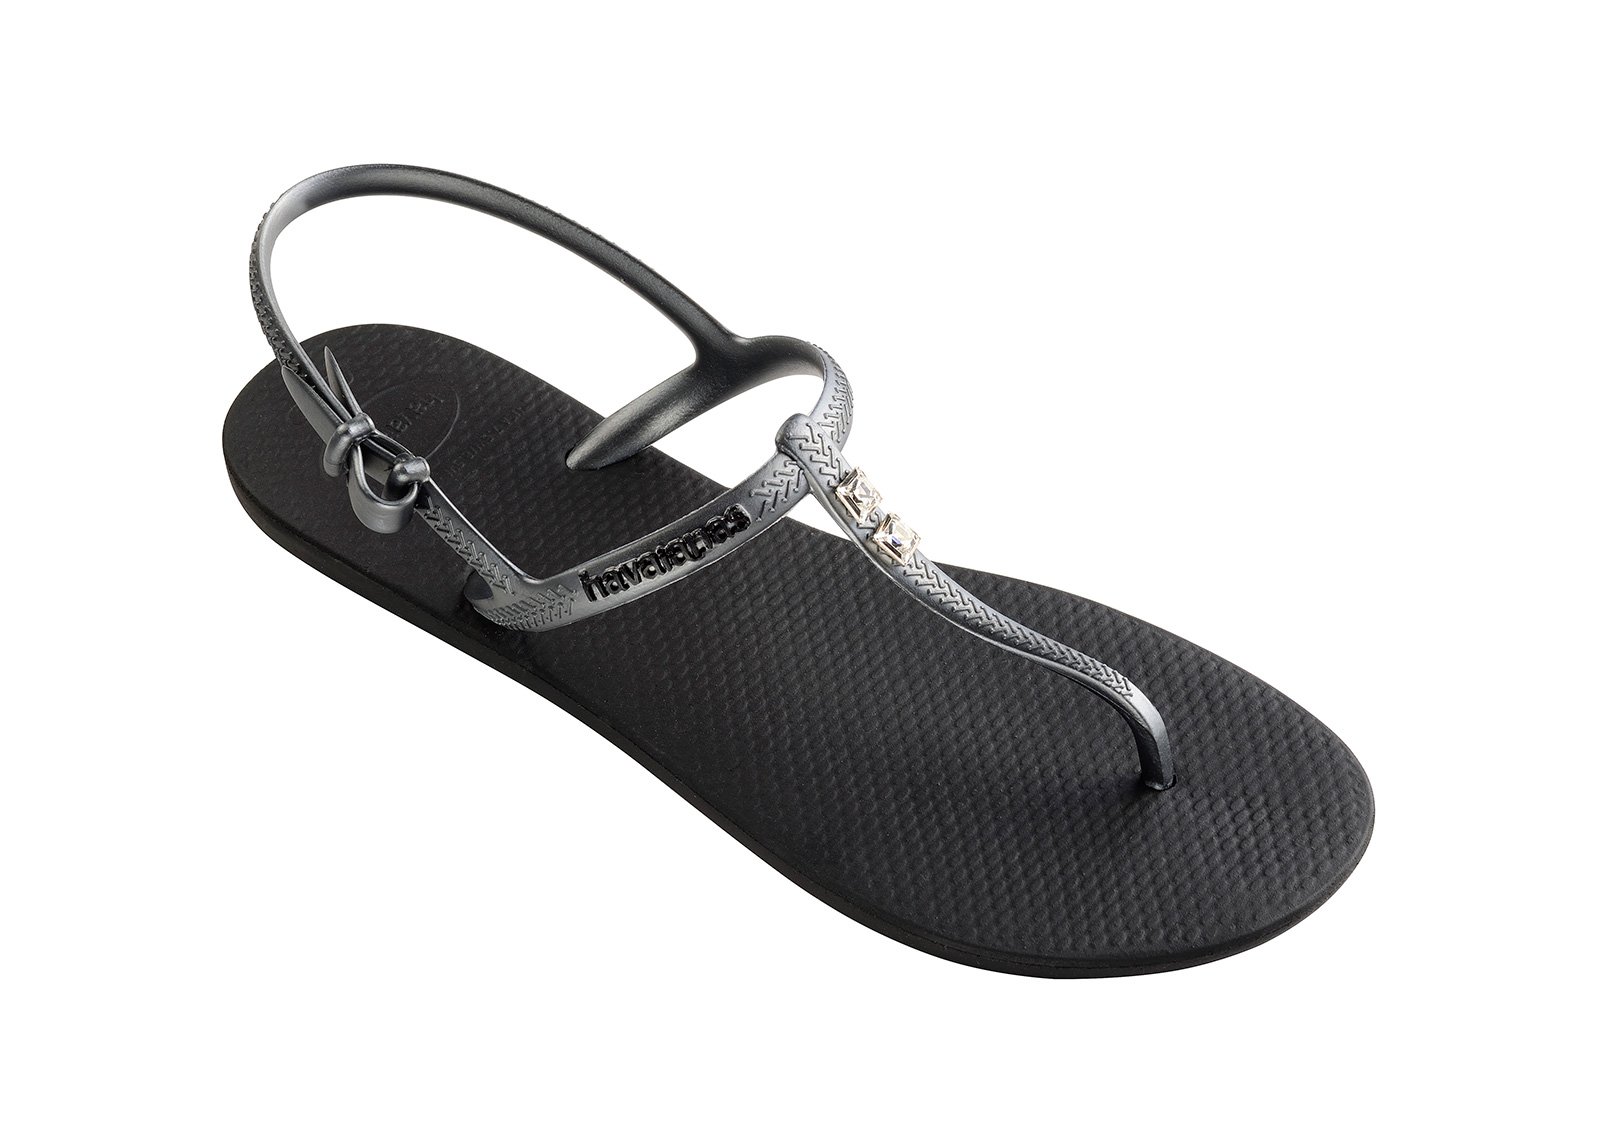 impliciet component Beperkingen Sandals Black Flip Flops - Havaianas Freedom Crystal Black/graphite